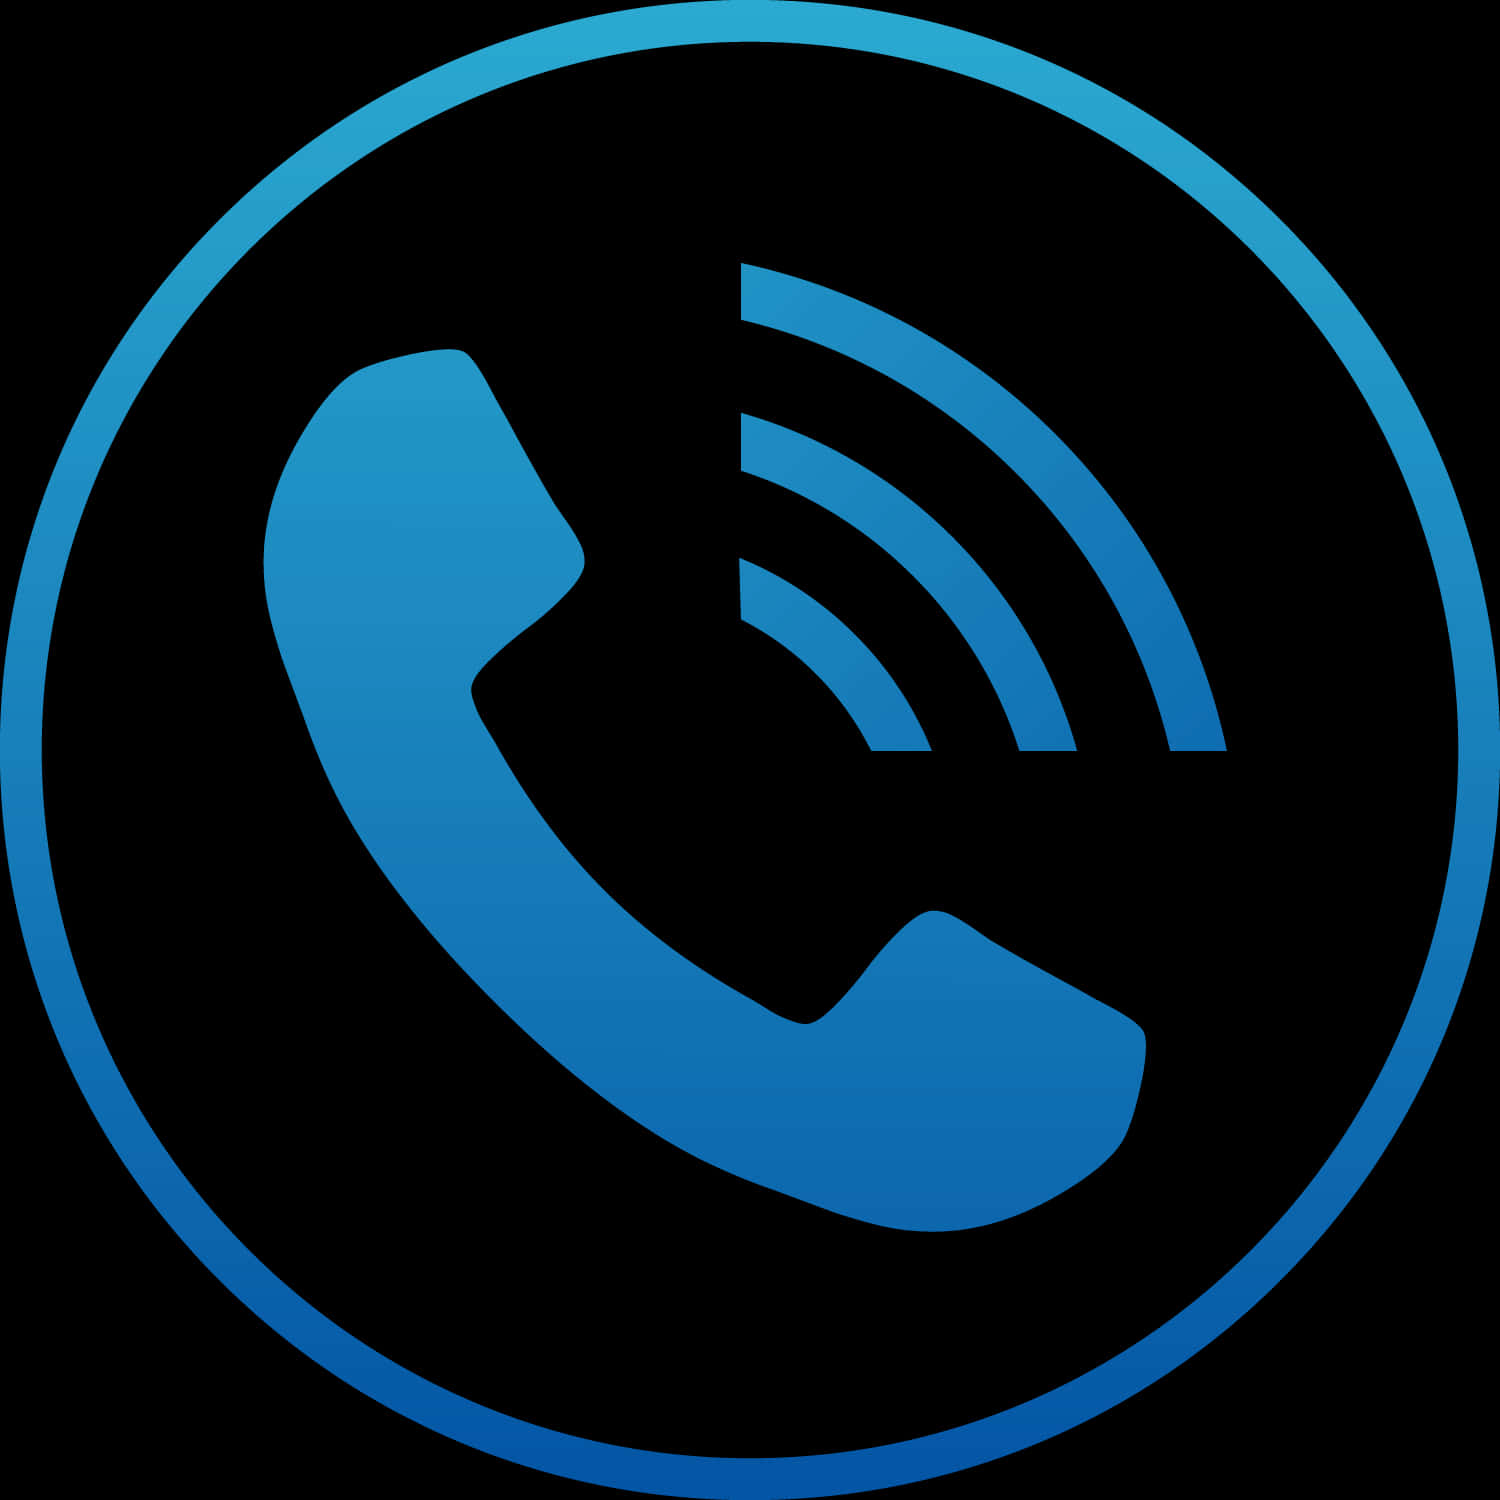 A Blue Phone Symbol In A Circle